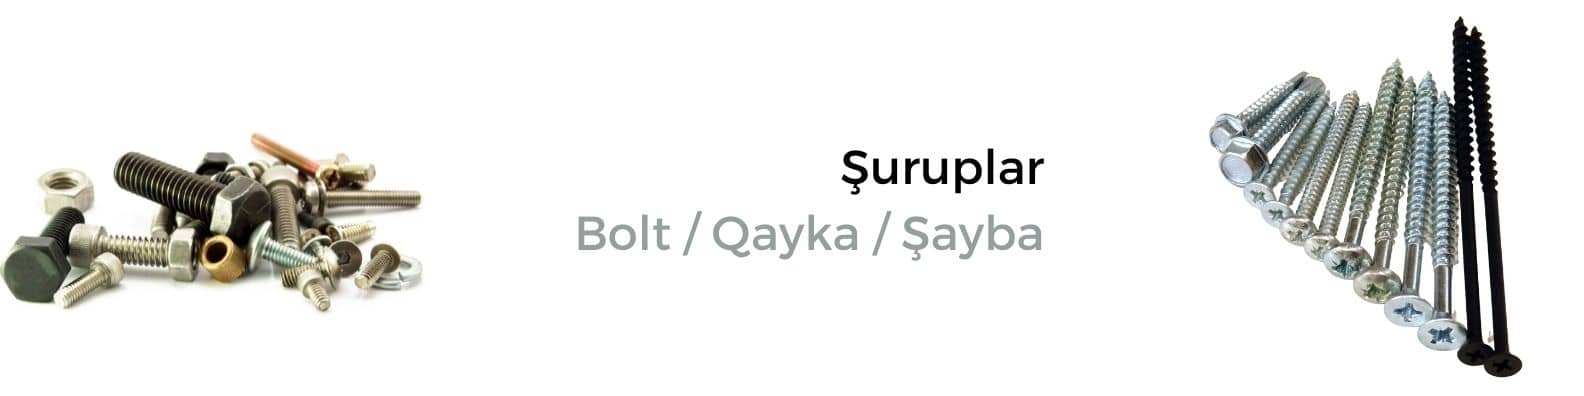 Şuruplar
Bolt / Qayka / Şayba